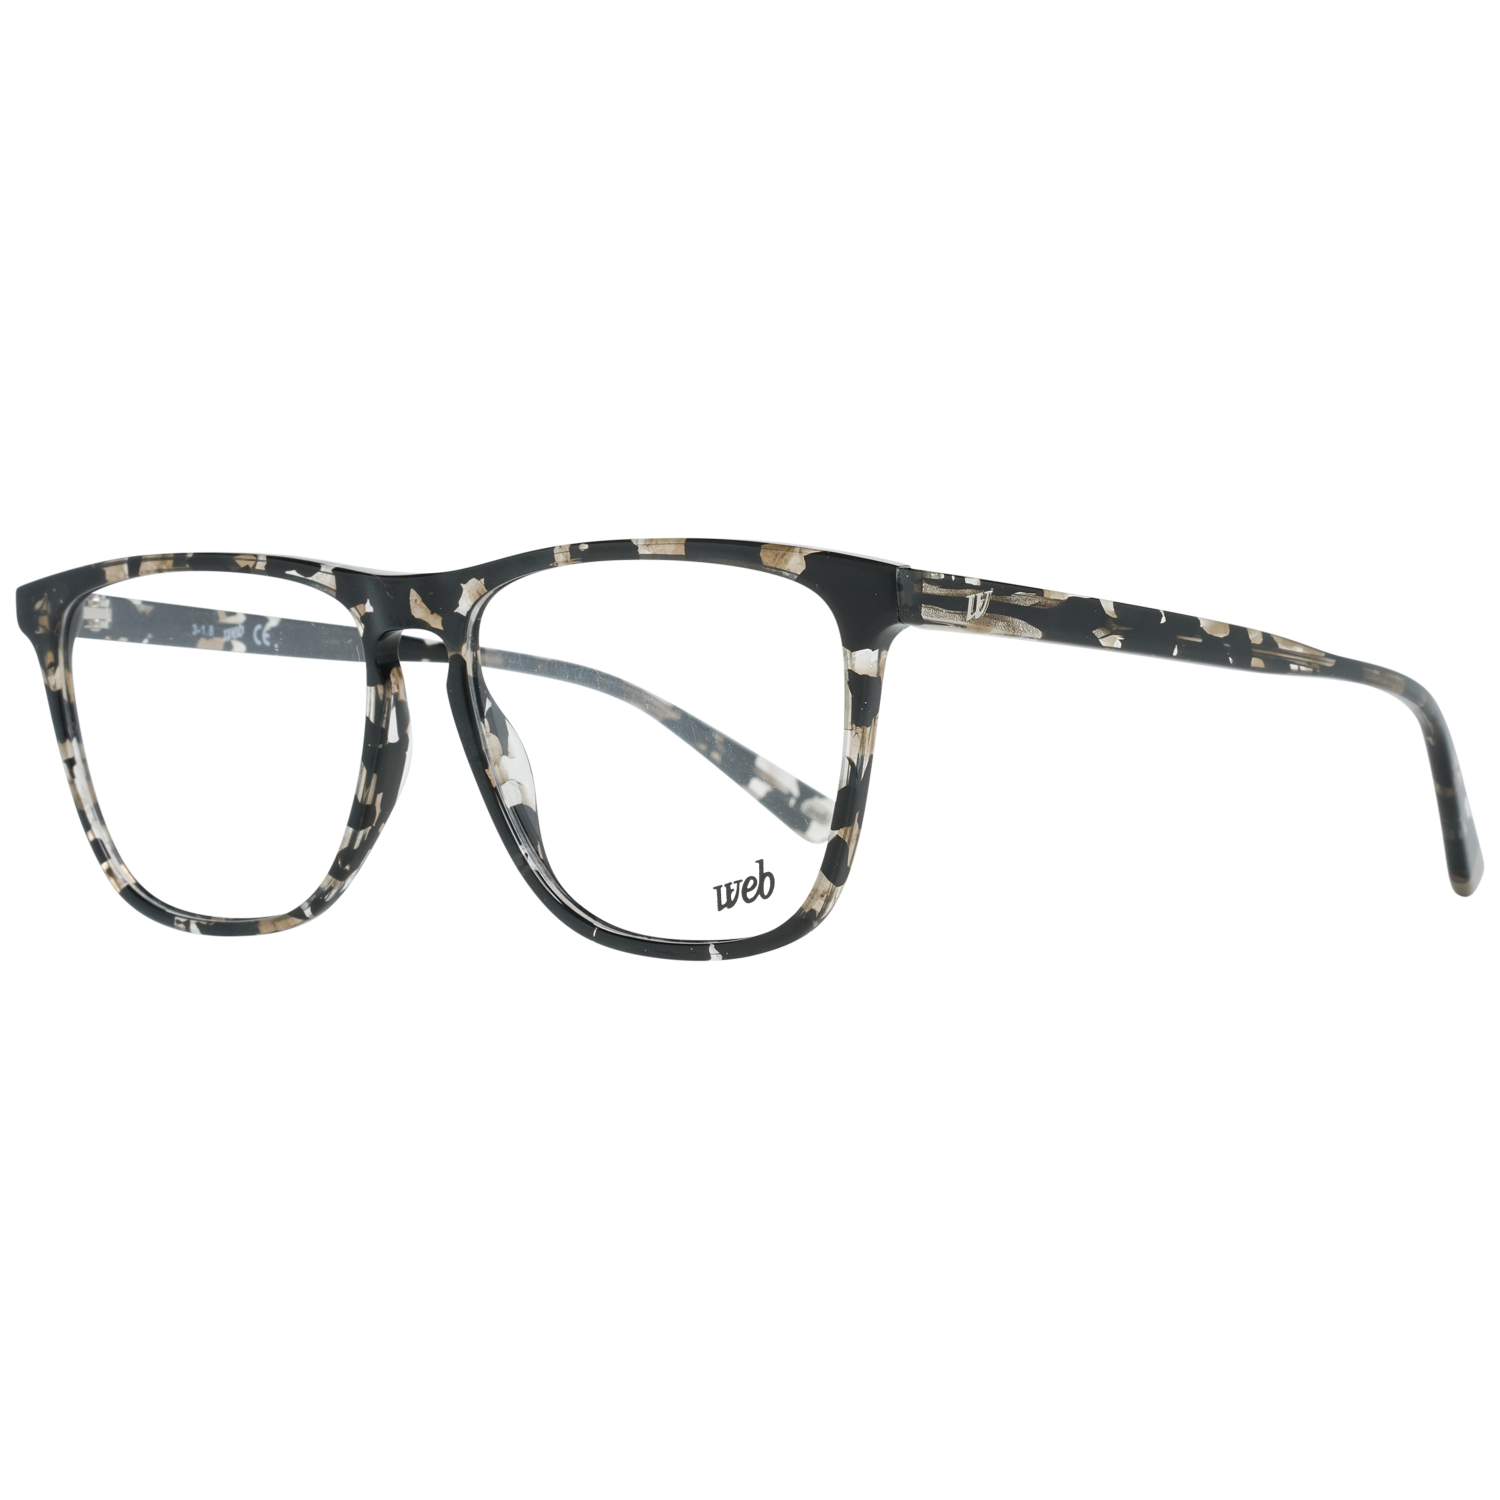 Web Frames Web Glasses Optical Frame WE5286 055 55 Eyeglasses Eyewear UK USA Australia 